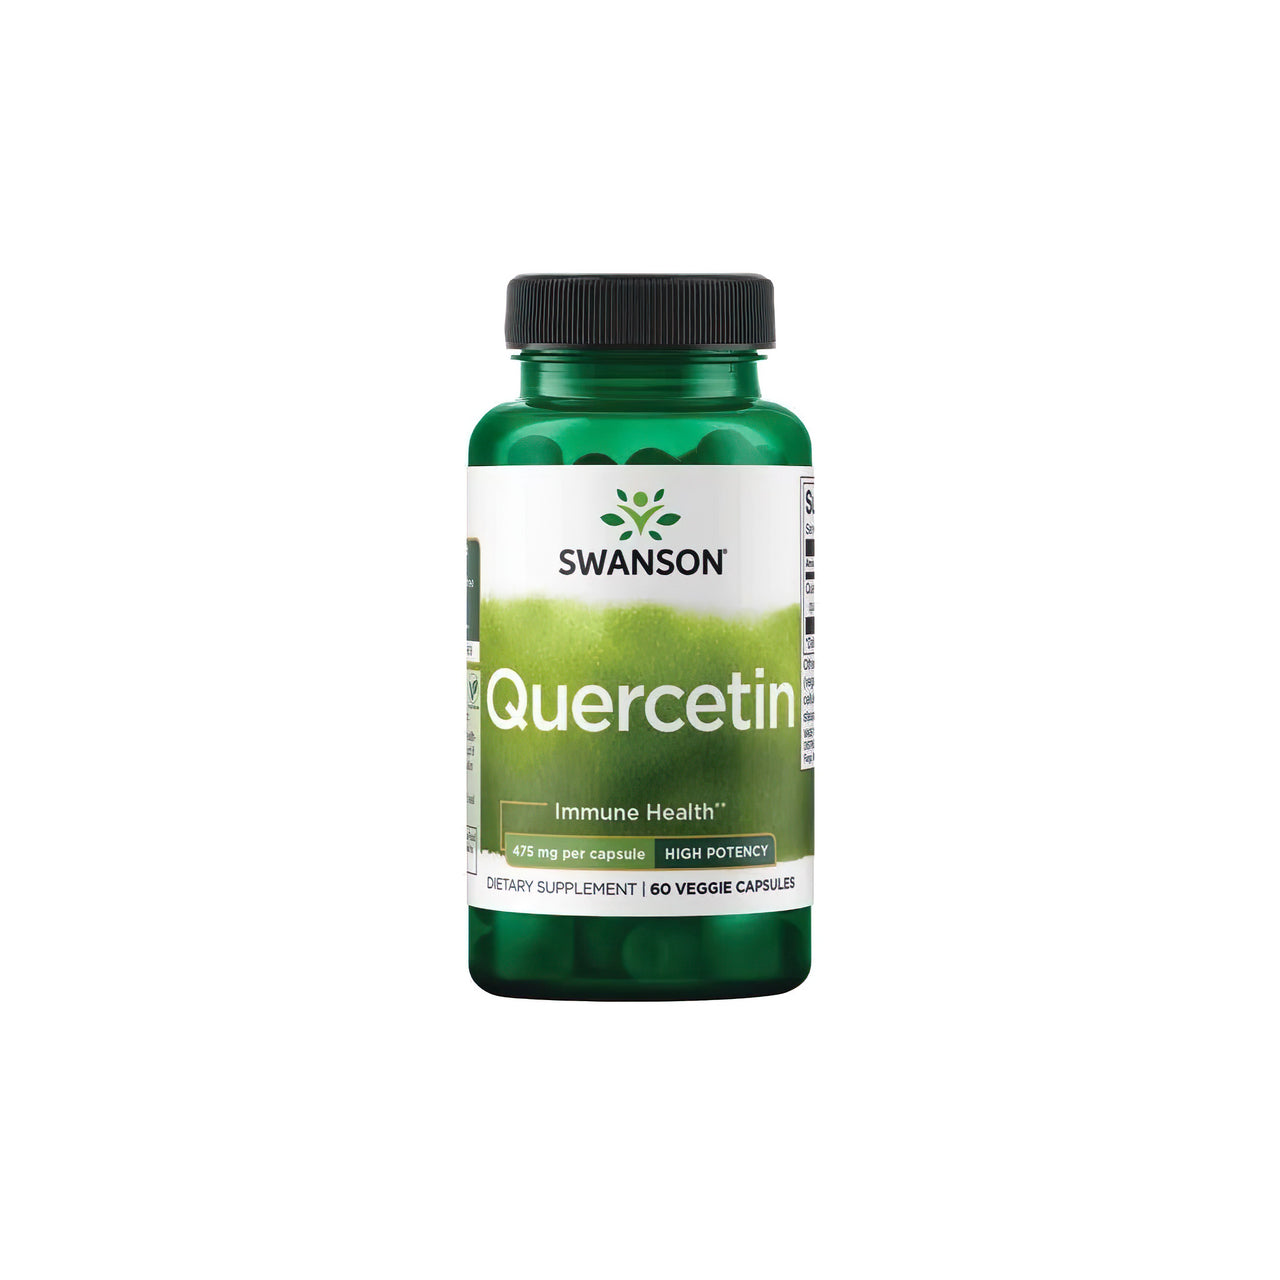 Une bouteille de Swanson Quercetin 475 mg 60 vcaps, un puissant antioxydant pour le système immunitaire, sur un fond blanc.